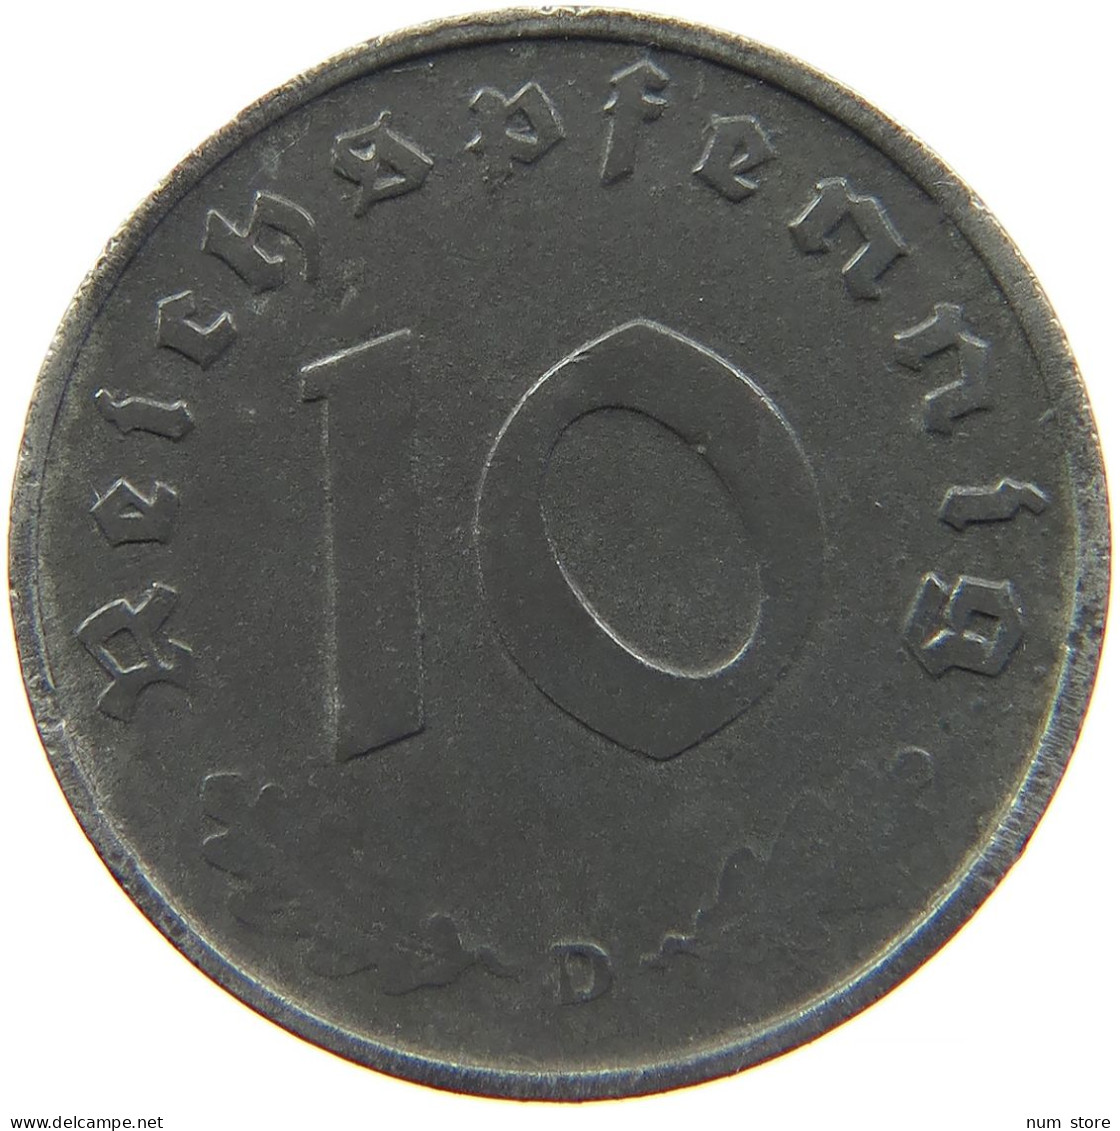 GERMANY 10 REICHSPFENNIG 1944 D #s095 0009 - 10 Reichspfennig